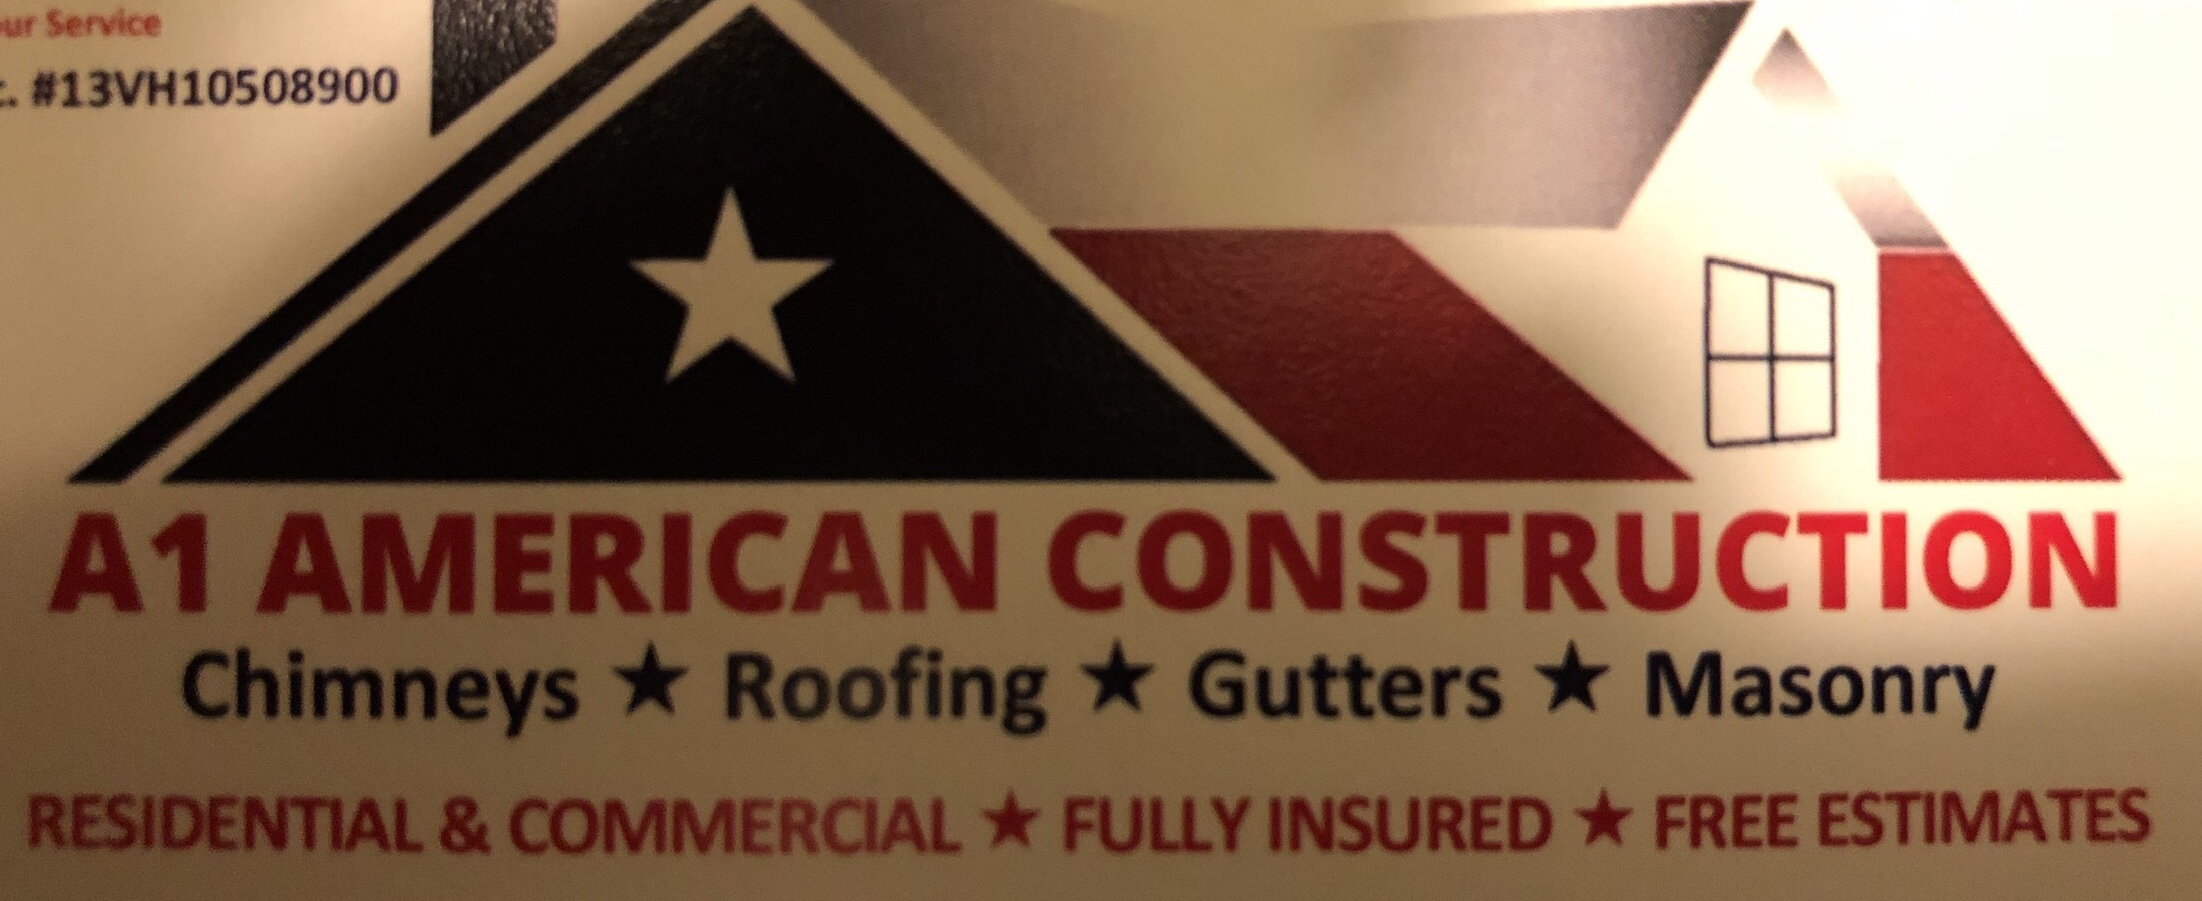 A1-American Construction Logo